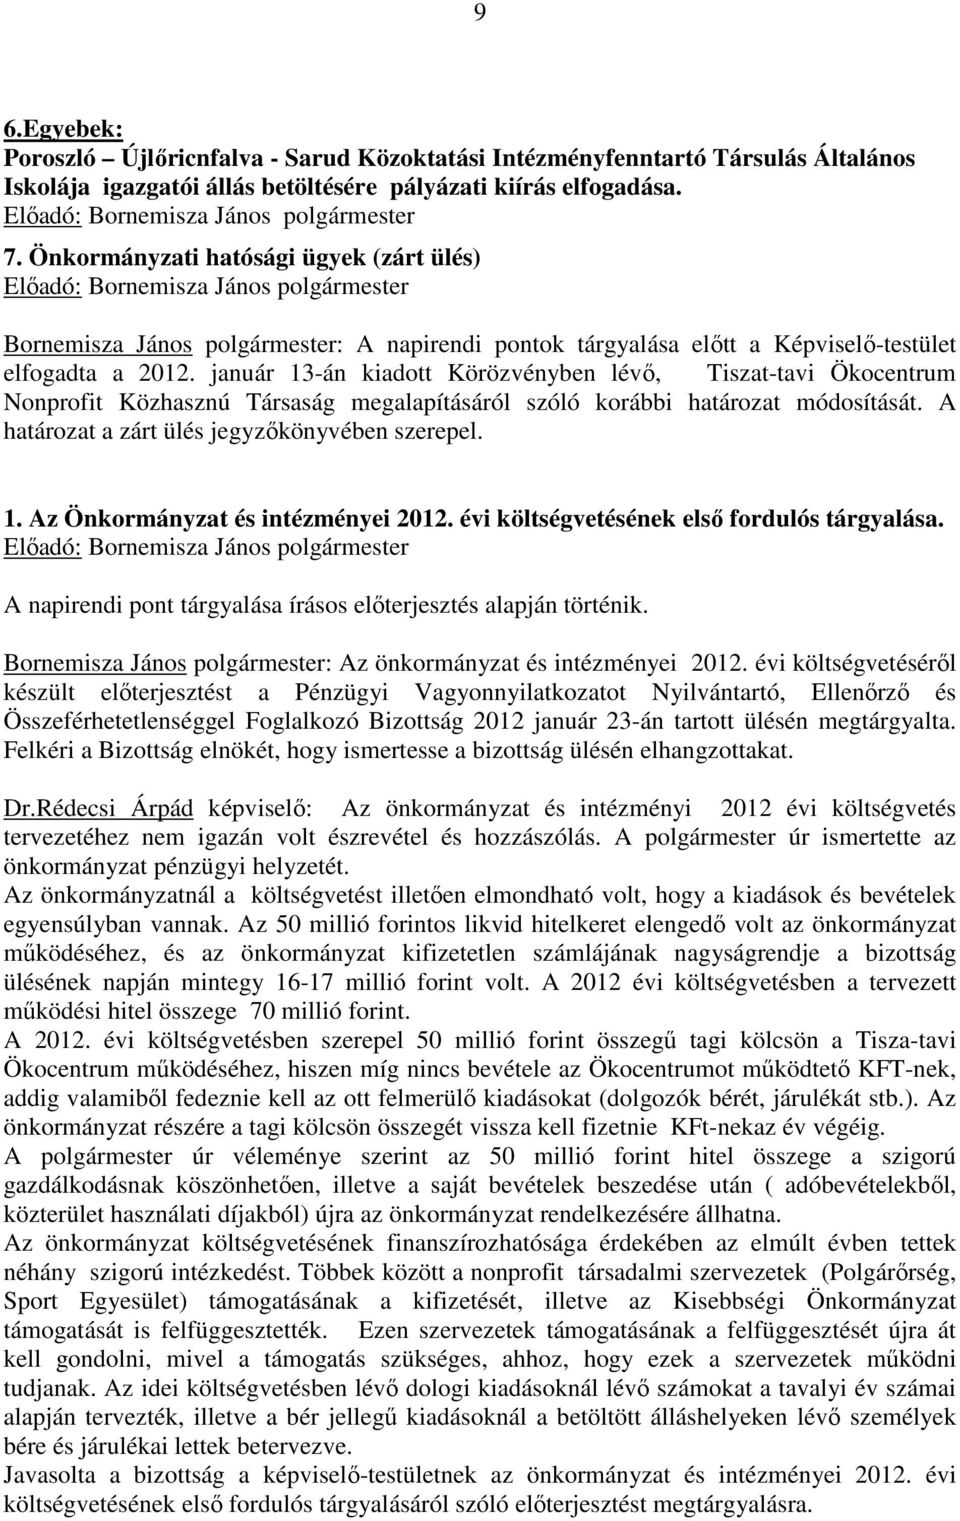 január 13-án kiadott Körözvényben lévő, Tiszat-tavi Ökocentrum Nonprofit Közhasznú Társaság megalapításáról szóló korábbi határozat módosítását. A határozat a zárt ülés jegyzőkönyvében szerepel. 1. Az Önkormányzat és intézményei 2012.